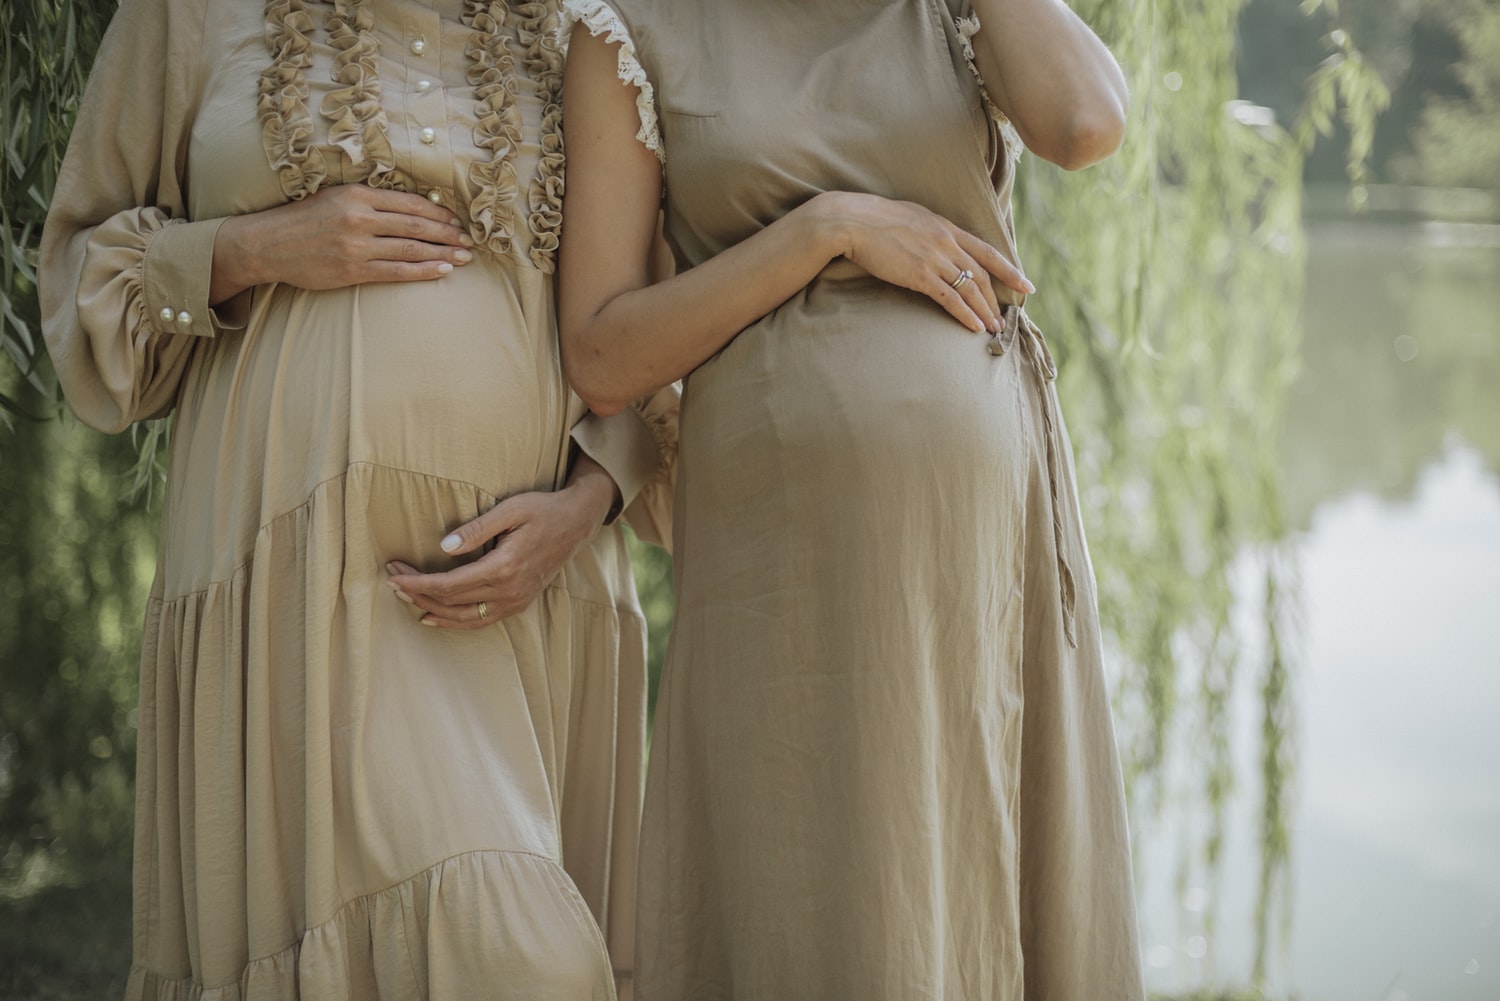 Mayor bienestar durante el embarazo - El Jardín de Venus